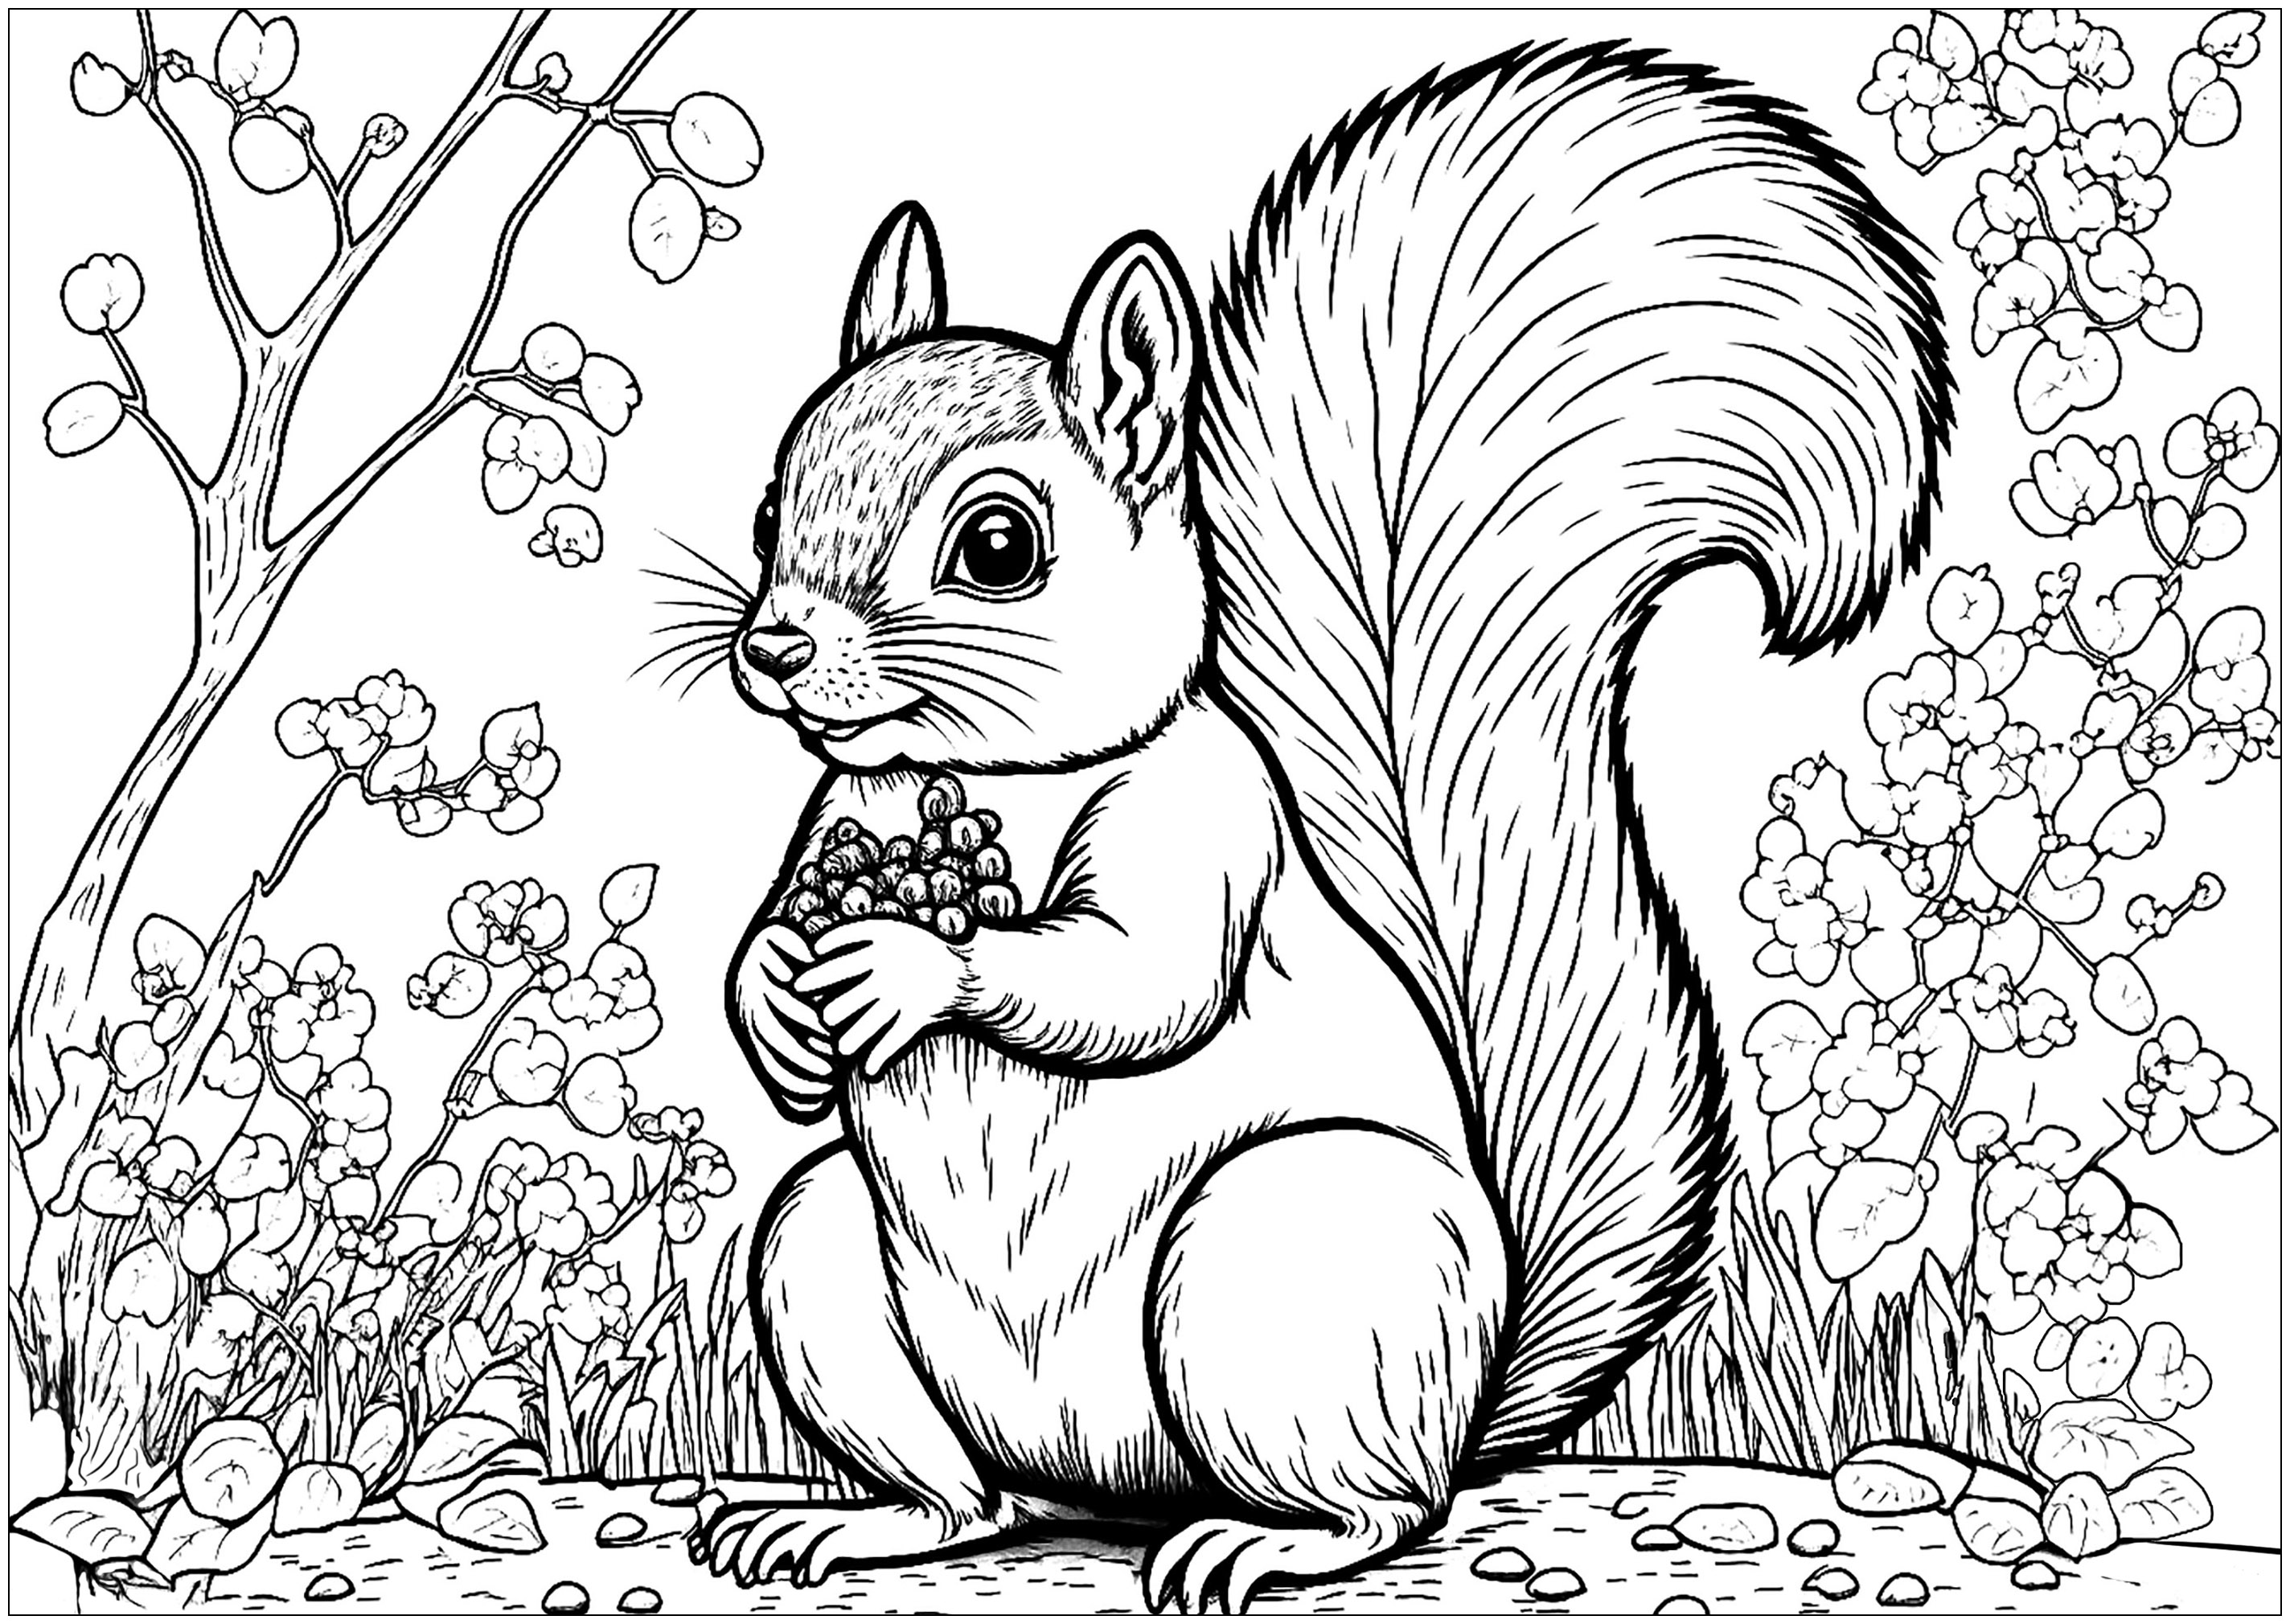 Pretty realistic squirrel to color